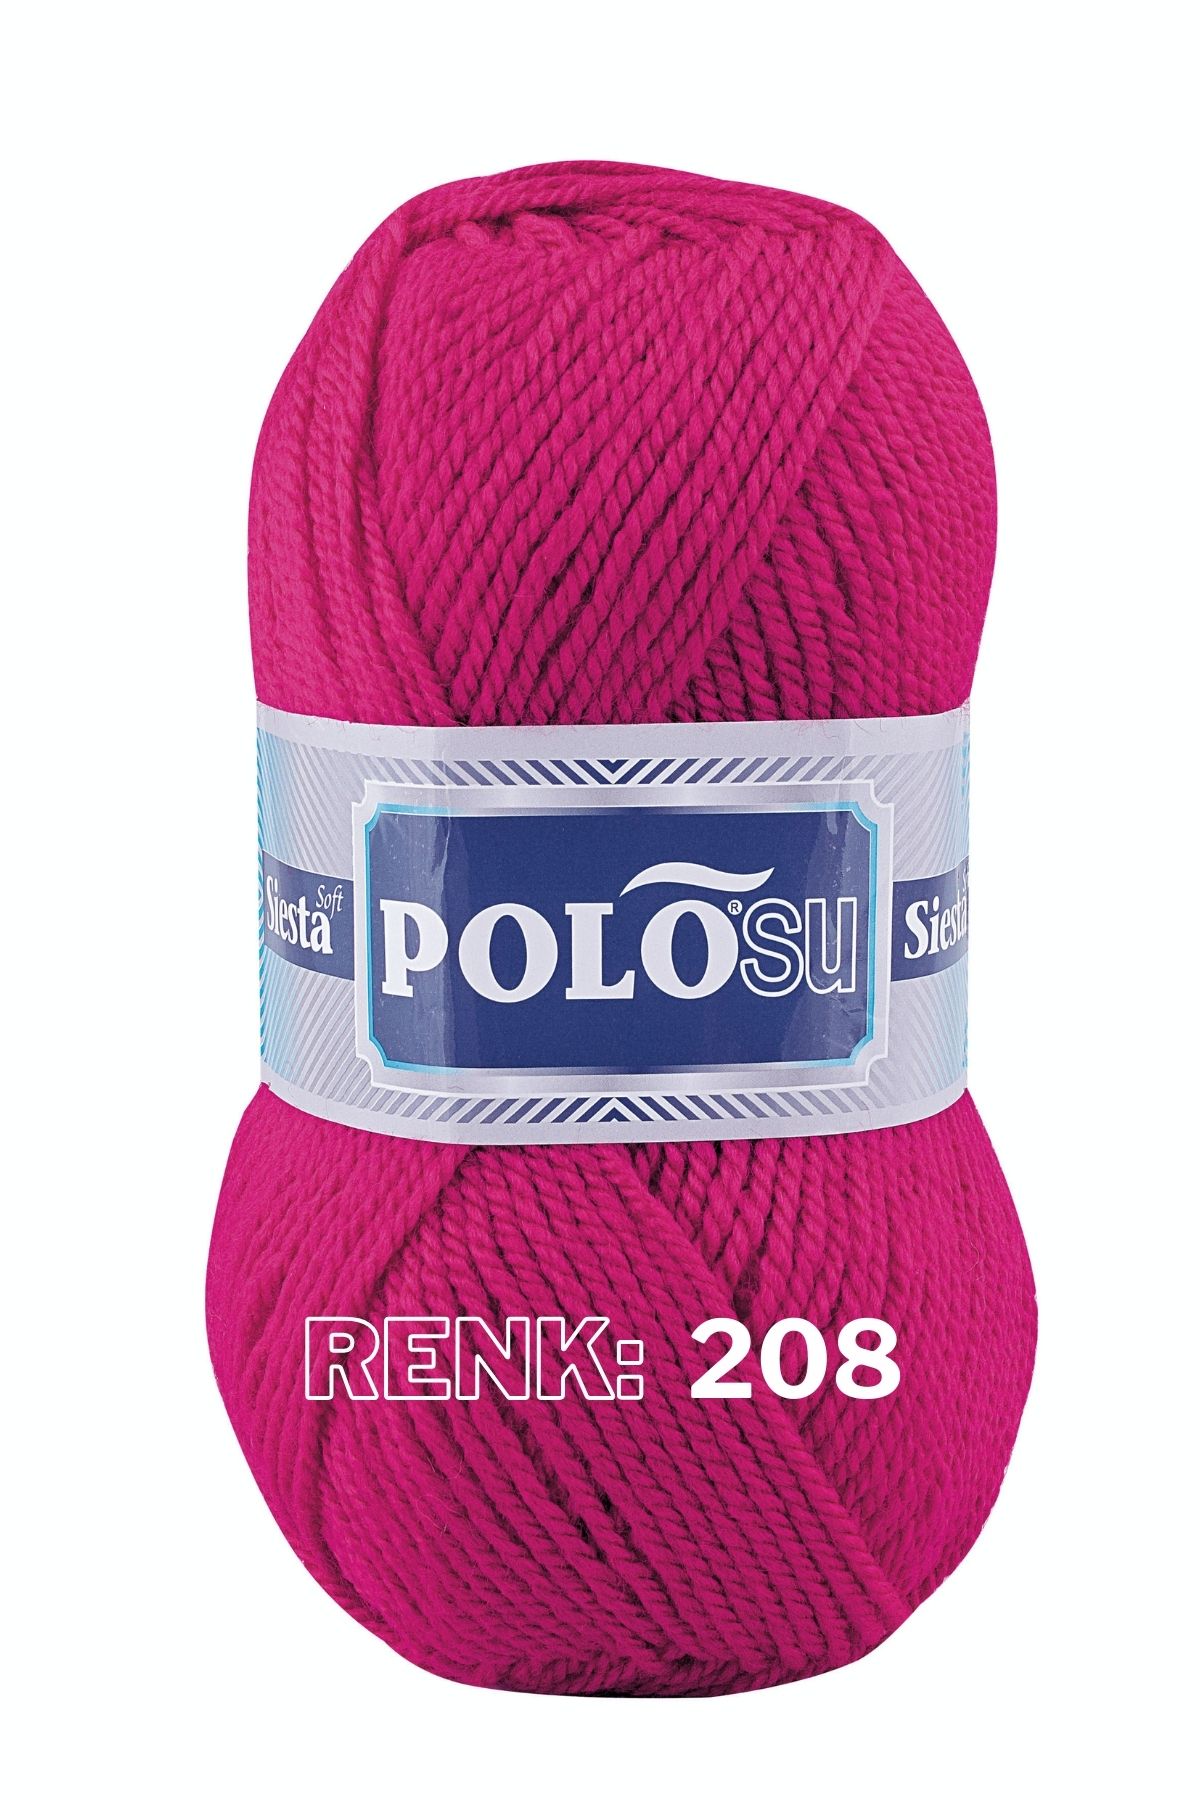 Polosu Açık Fuşya  Siesta Soft - Atkı Yelek Kazak El Örgü Ipliği Renk: 208